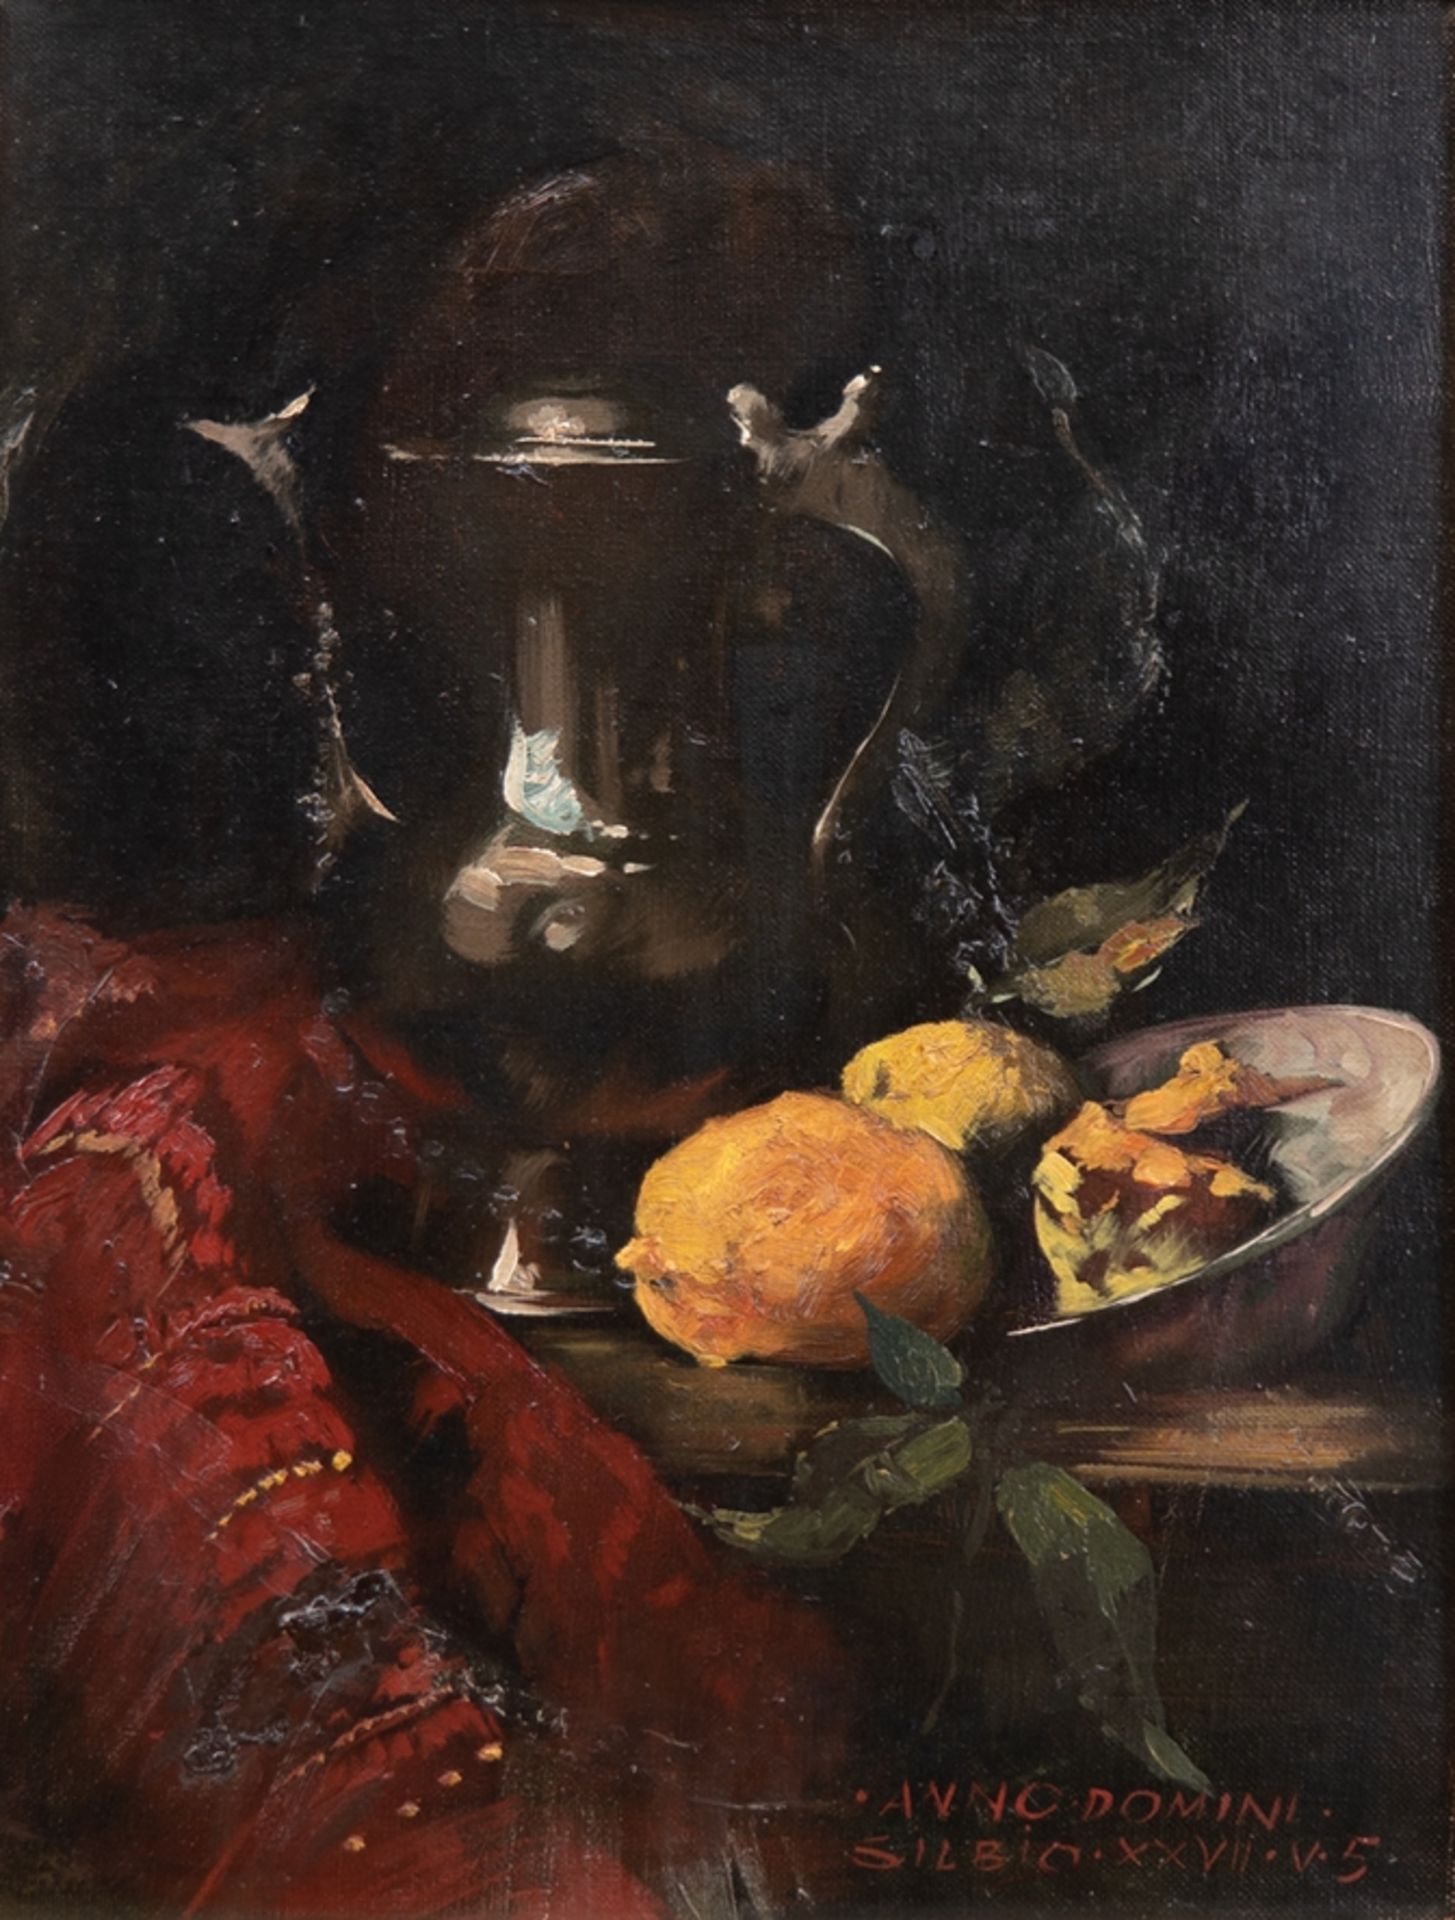 Italienicher Impressionist um 1950 "Stilleben mit Früchten und Kanne", Öl/ Lw., bez. "Anno Domini S